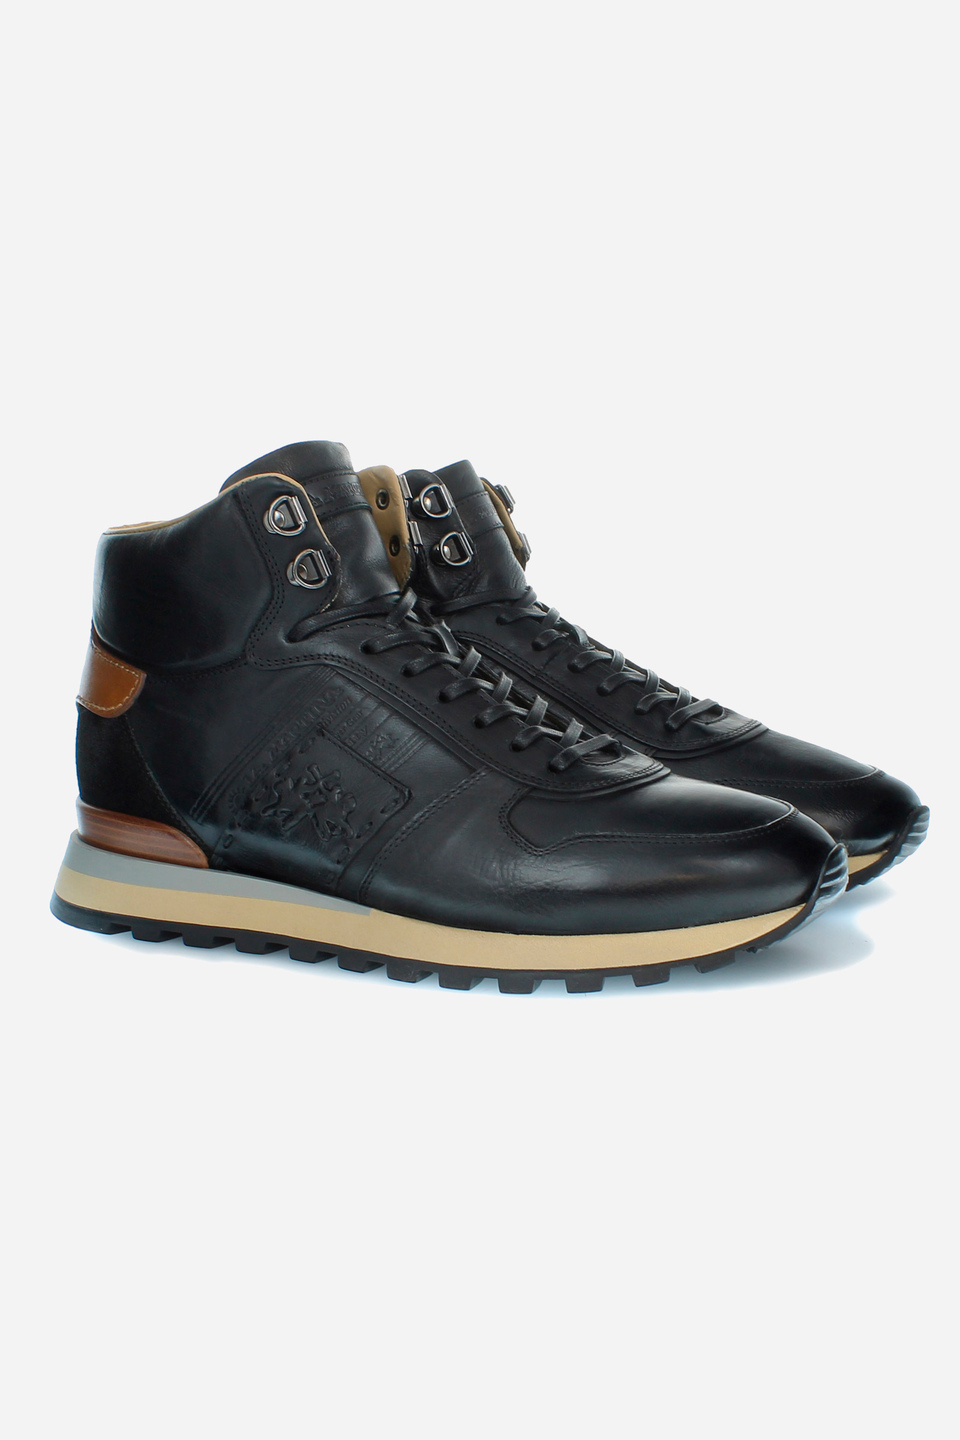 Herren High-Top-Ledersneaker | La Martina - Official Online Shop